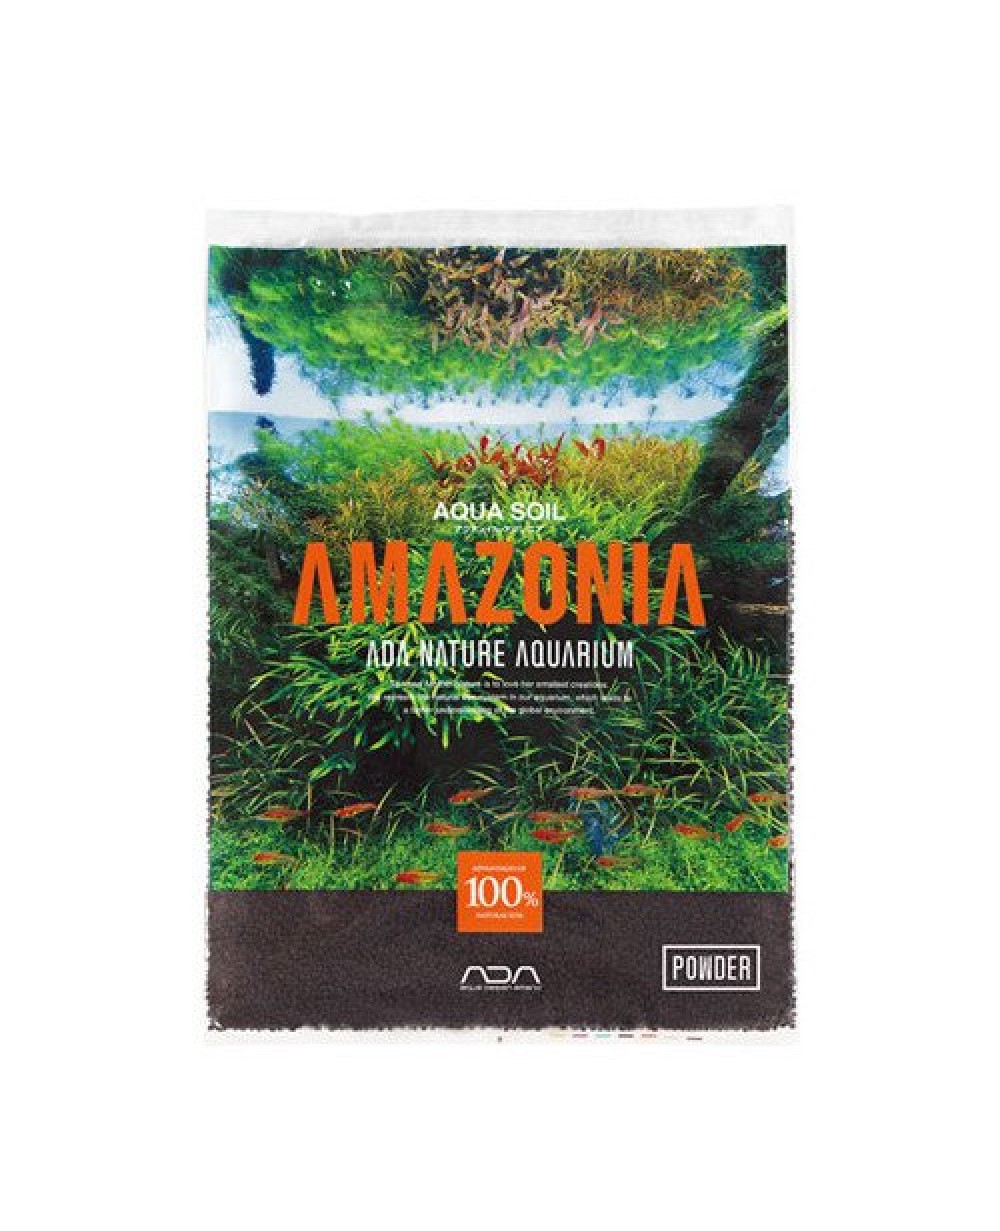 kaminature-sustrato-para-acuarios-ada-aqua-soil-amazonia-powder-001